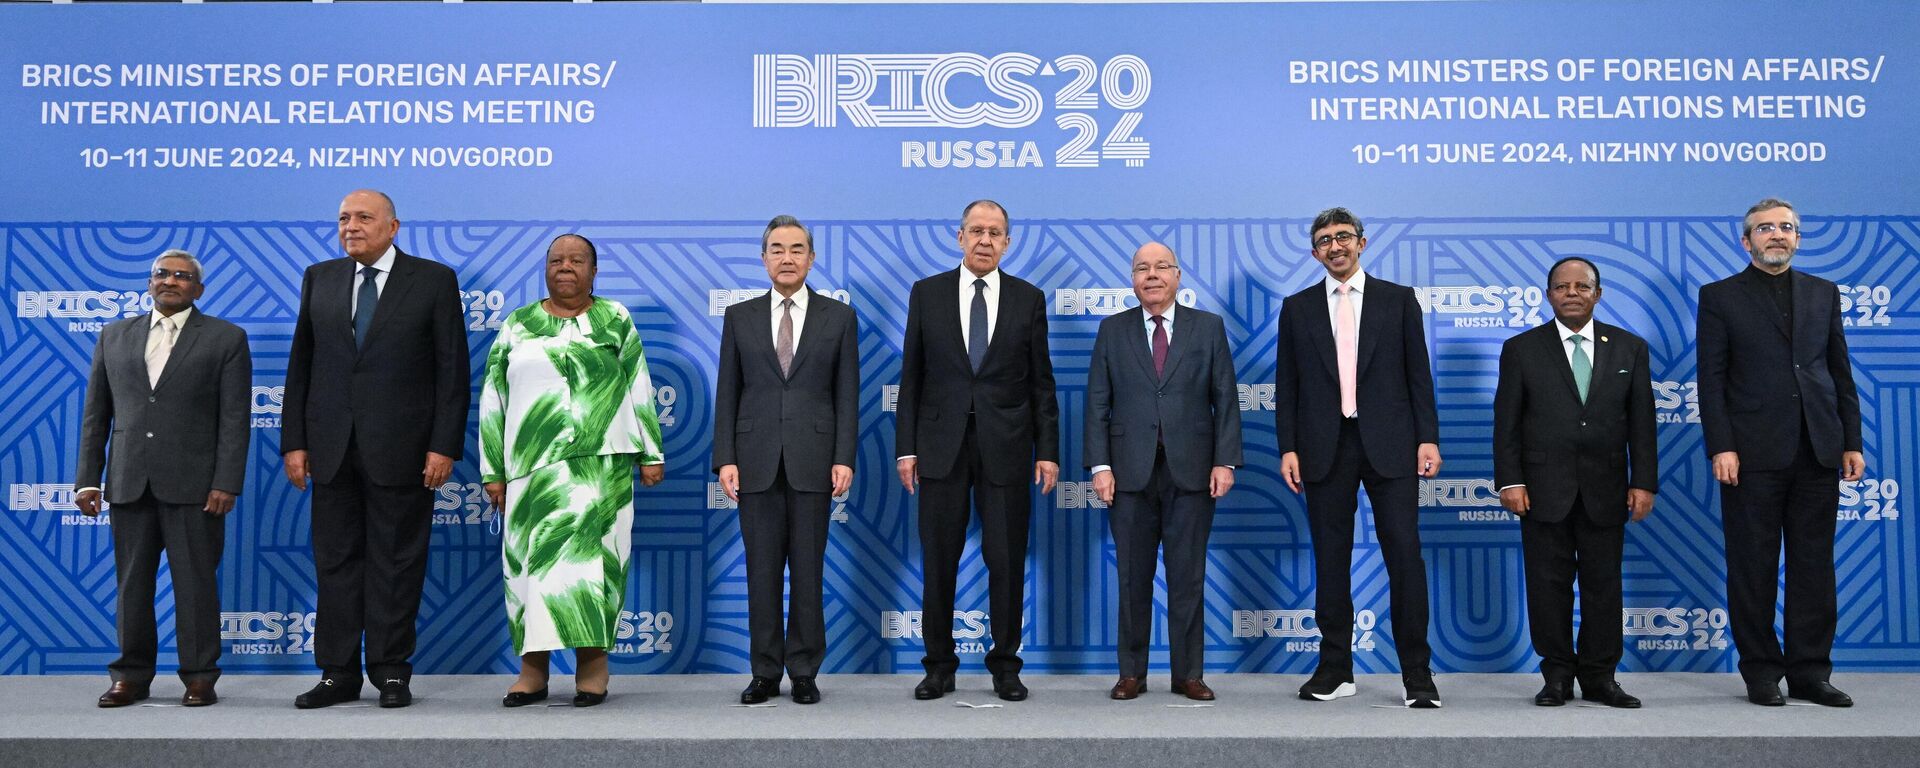 Da esquerda para a direita, responsáveis de Relações Exteriores de vários países: Dammu Ravi, da Índia; Sameh Shoukry, do Egito; Naledi Pandor, da África do Sul; Wang Yi, da China; Sergei Lavrov, da Rússia; Mauro Vieira, do Brasil; Abdullah bin Zayed Al Nahyan, dos Emirados Árabes Unidos; Taye Atskeselassie, da Etiópia, e Ali Bagheri durante foto conjunta para a reunião de ministros das Relações Exteriores do BRICS em Nizhny Novgorod. Rússia, 10 de junho de 2024 - Sputnik Brasil, 1920, 01.07.2024